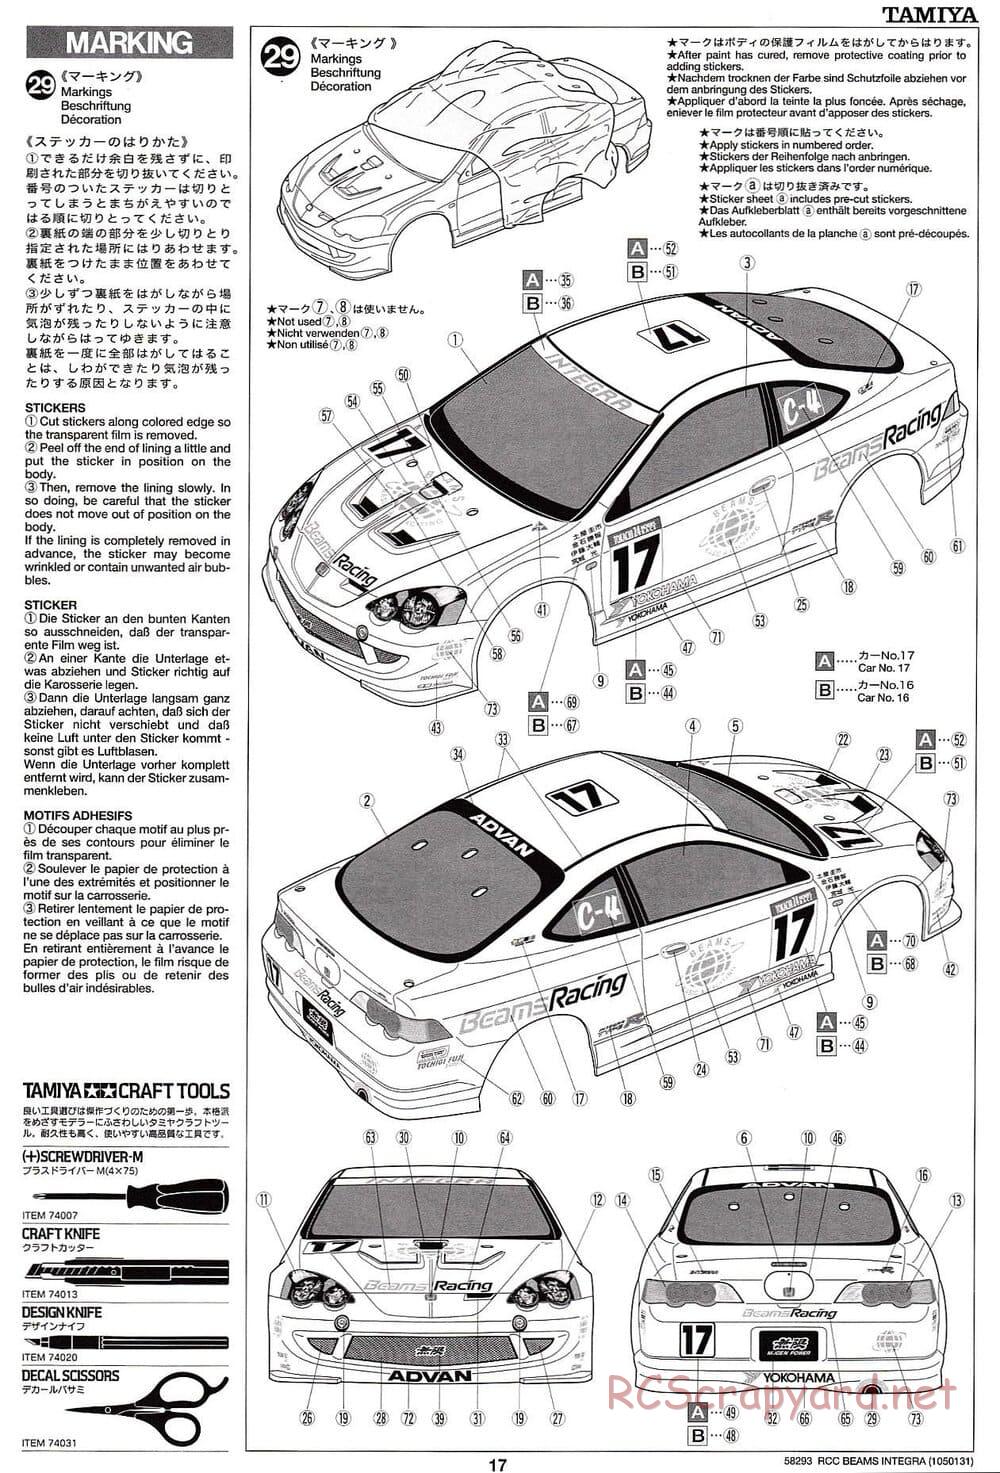 Tamiya - Beams Integra - TL-01 LA Chassis - Manual - Page 17